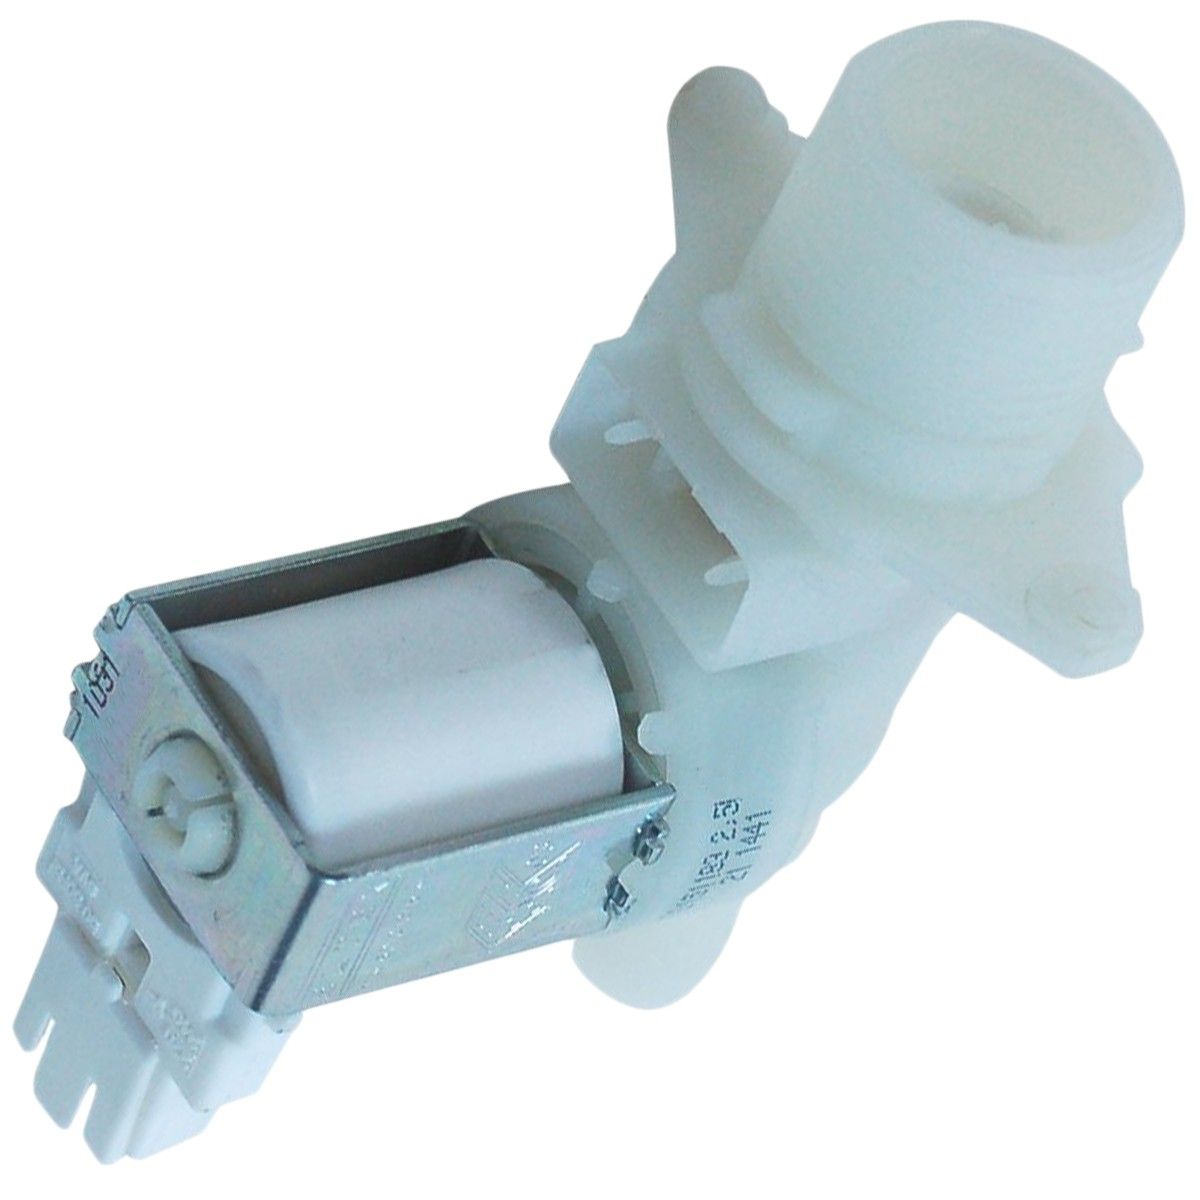 Jednocestný ventil myček nádobí Candy Hoover - 41033495 Candy / Hoover náhradní díly